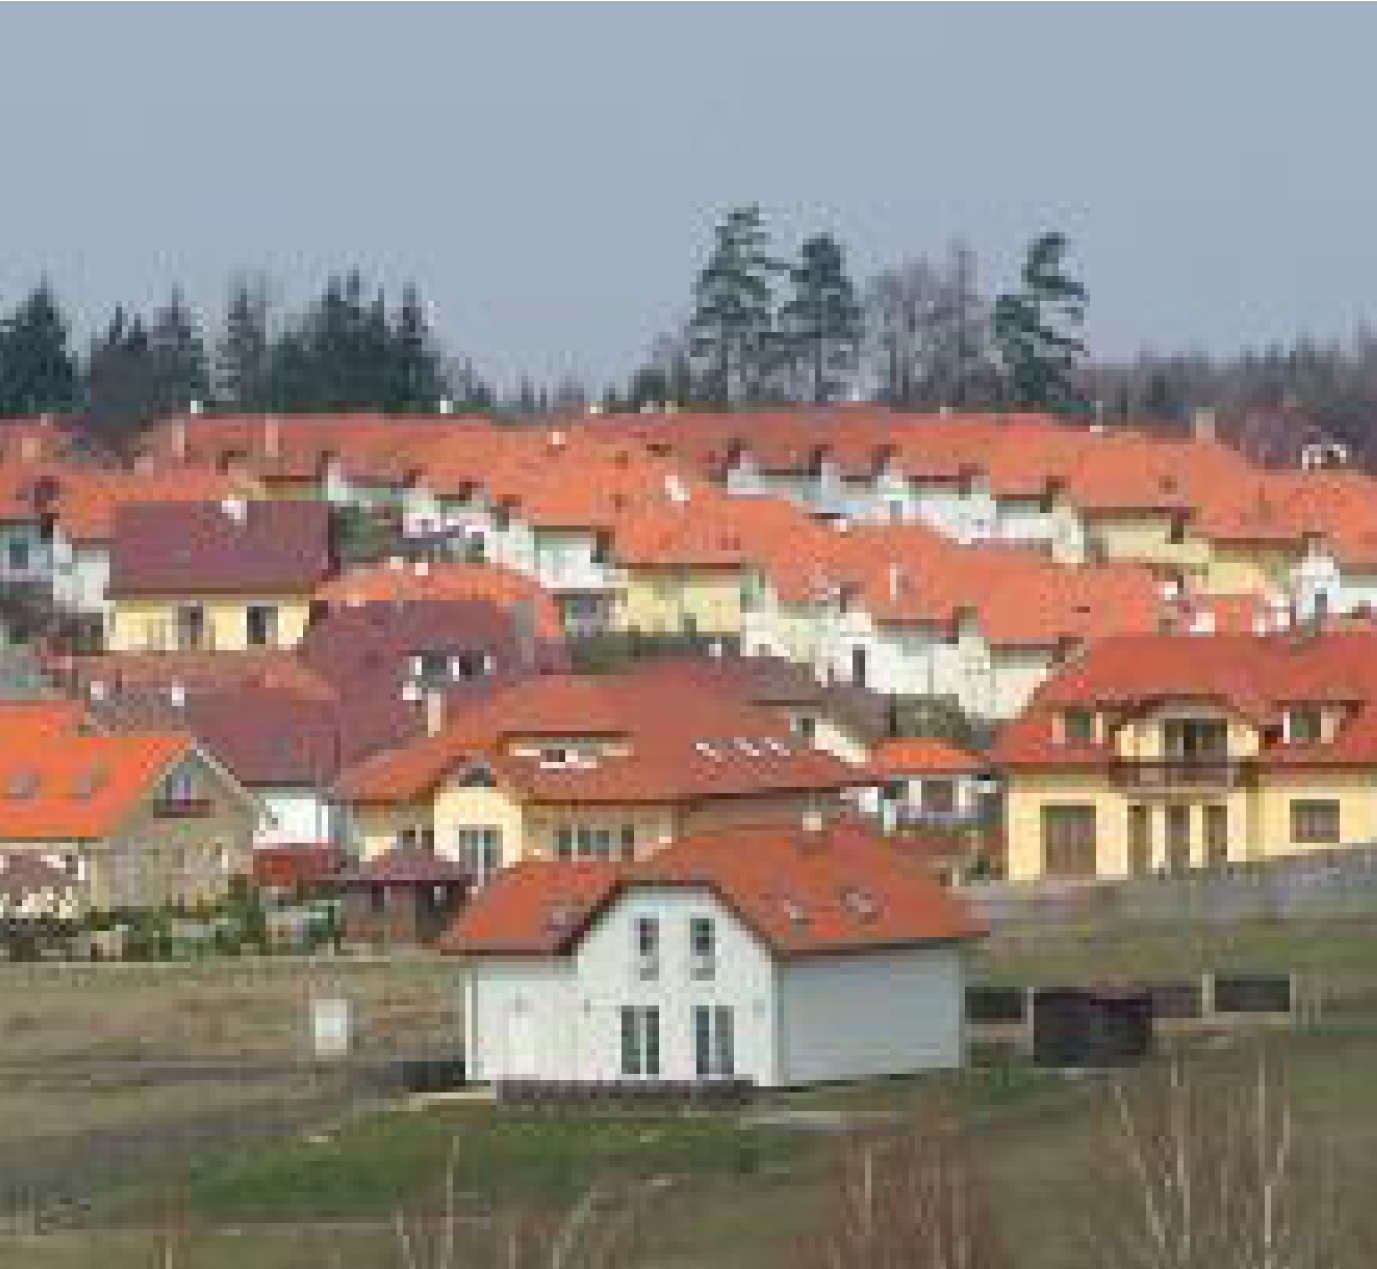 Habilitační přednáška: Suburbanizace v České republice: rozsah, vývoj, rozmístění a struktura